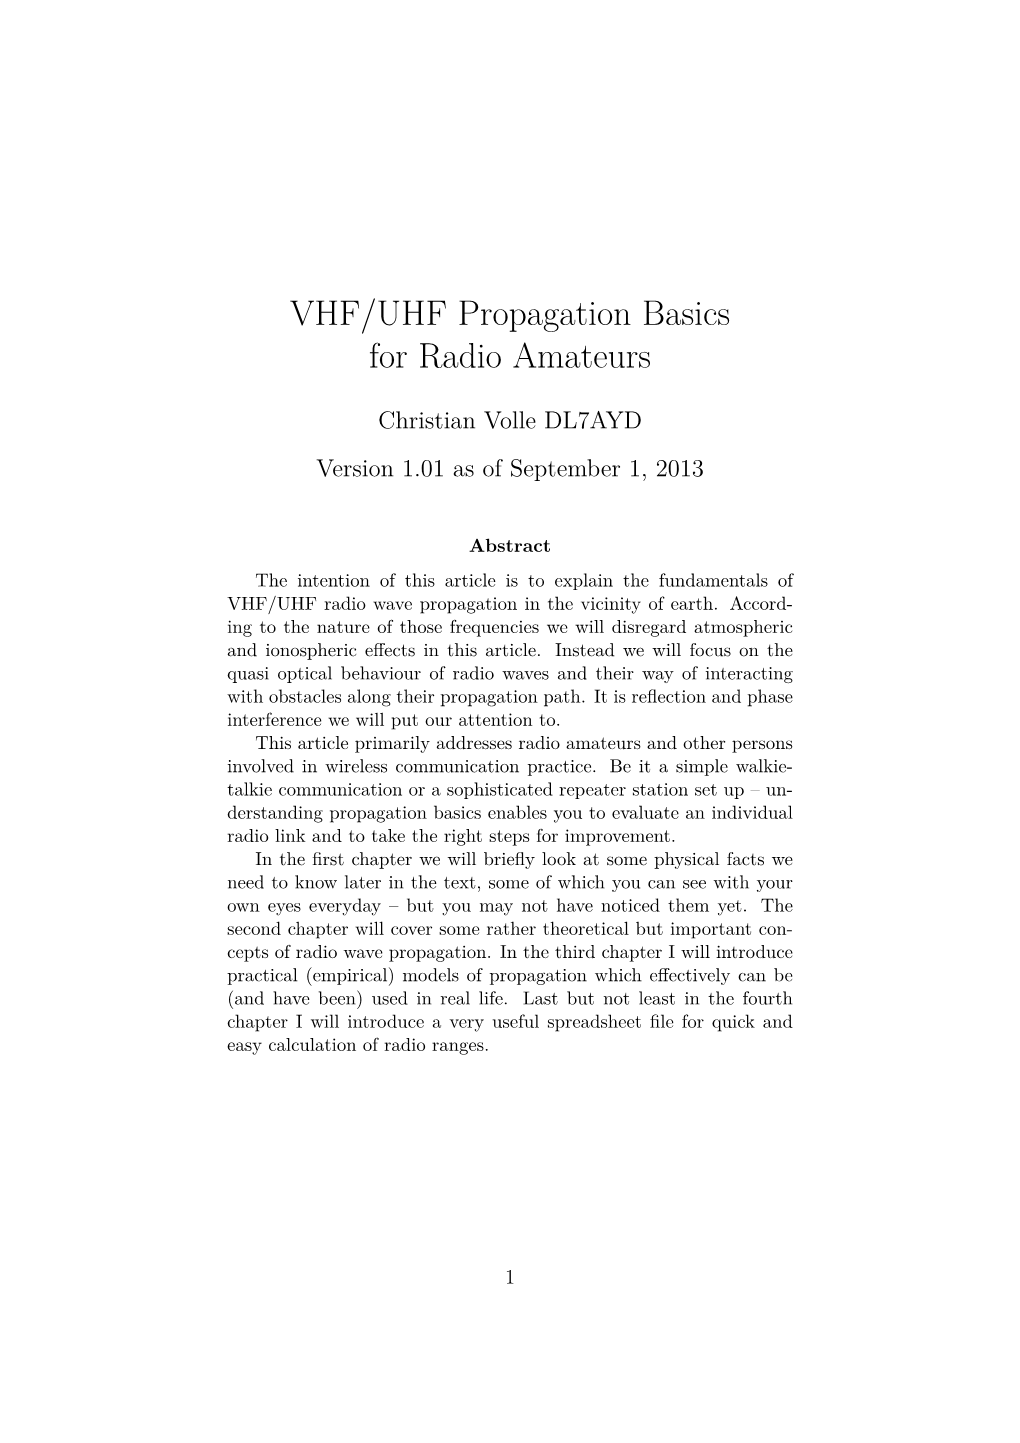 VHF/UHF Propagation Basics for Radio Amateurs